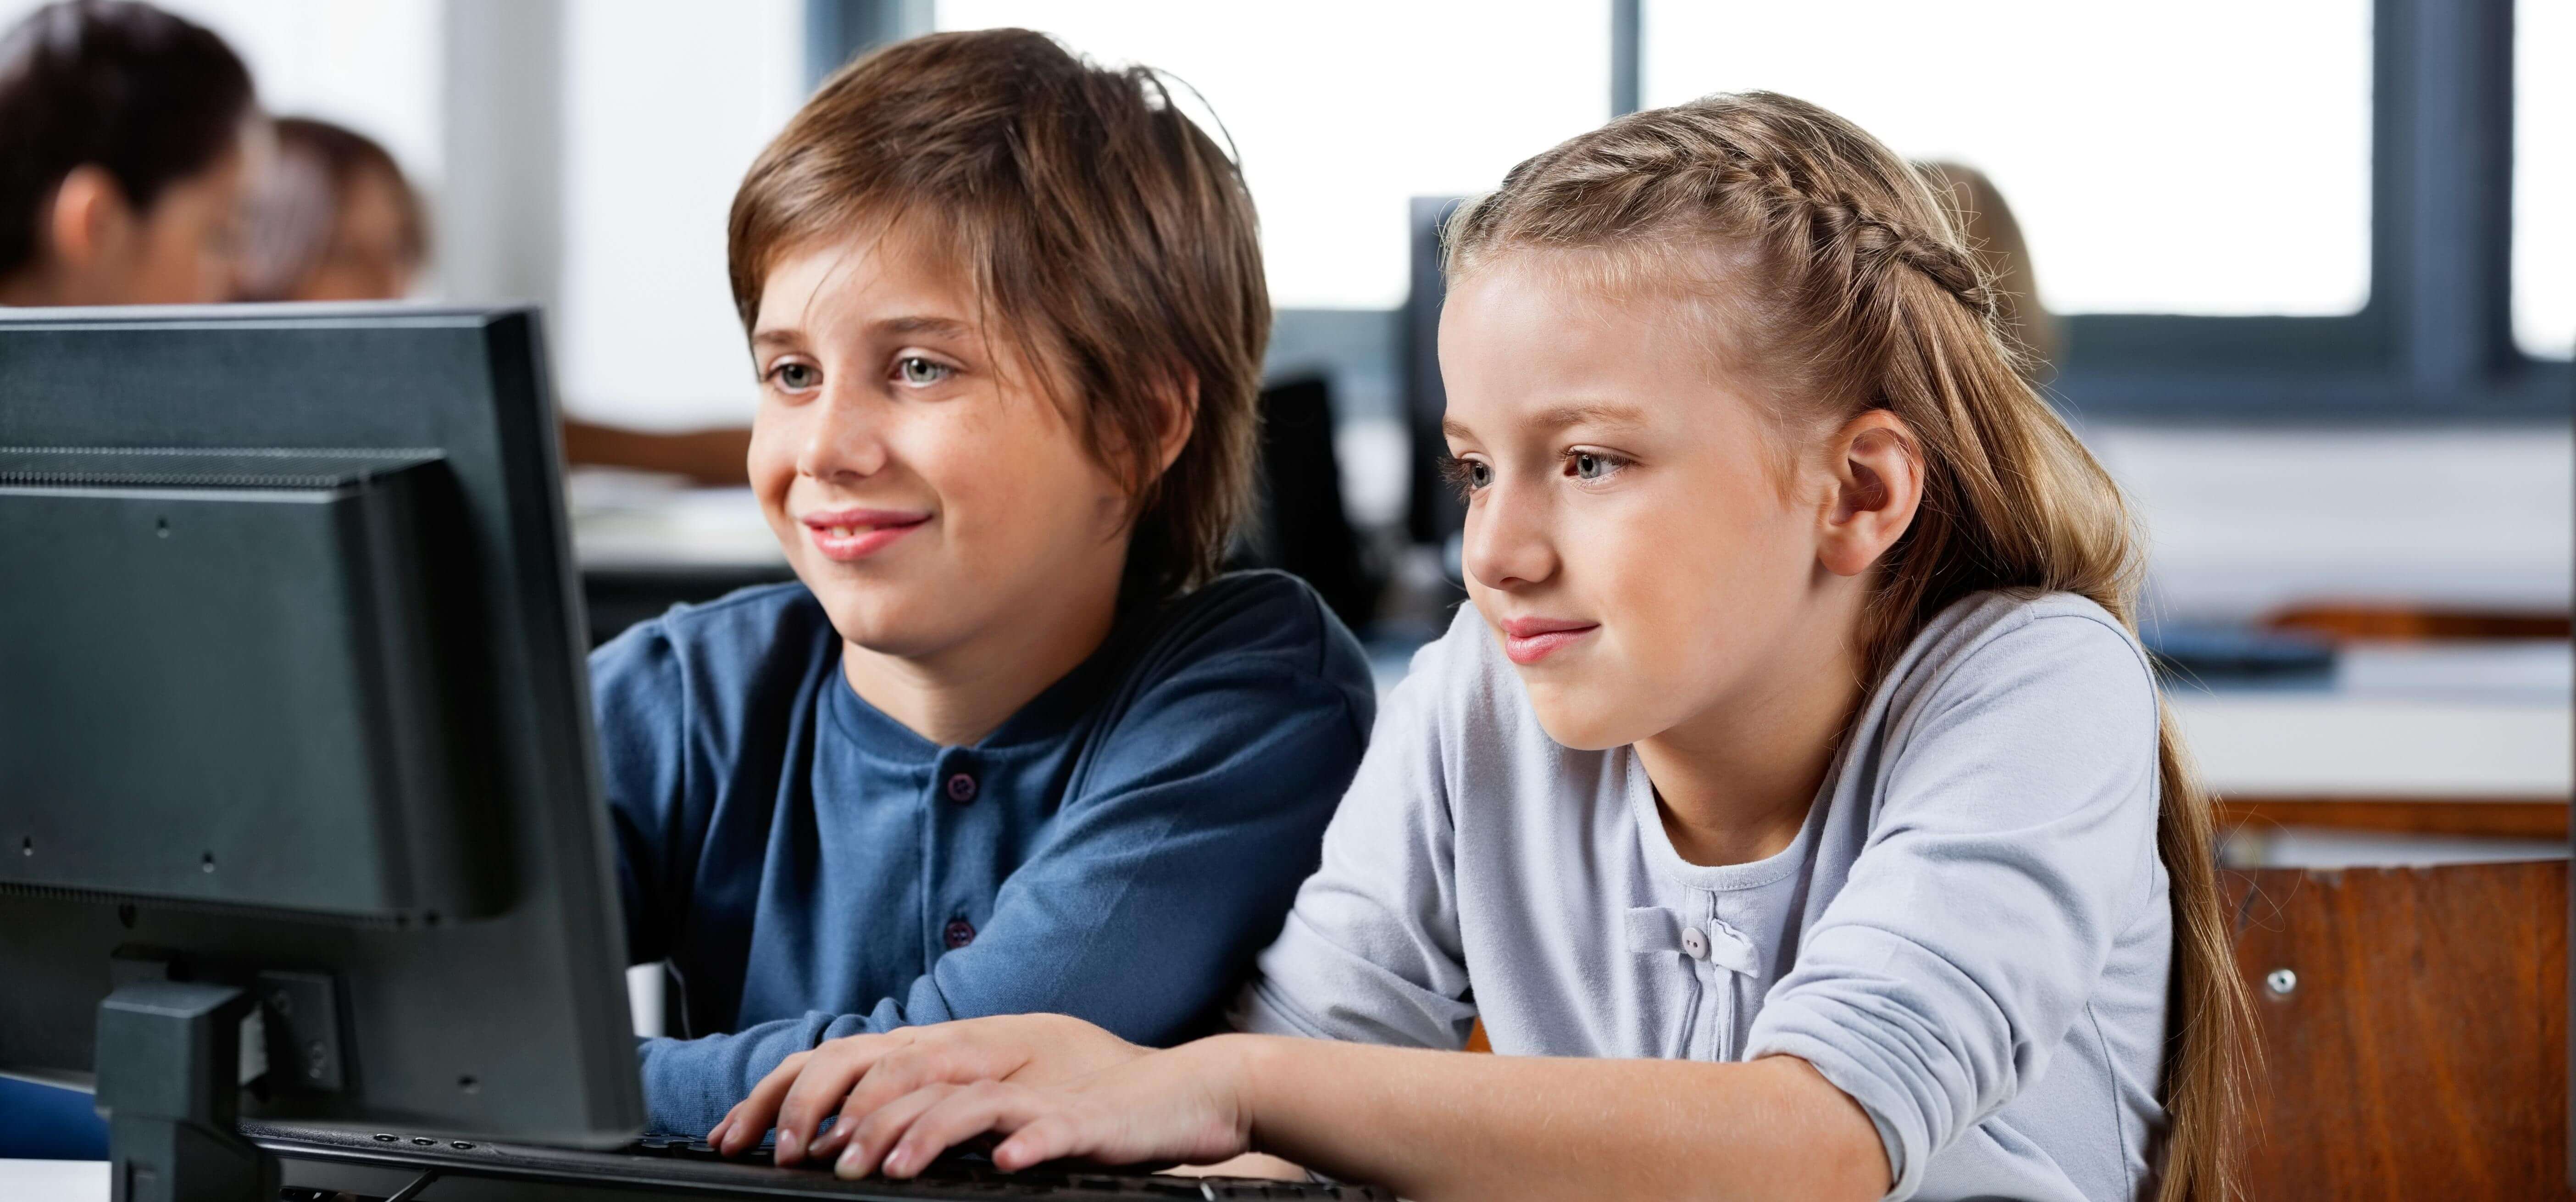 Ютуб дети на компьютере. Компьютер для детей. Ученик за компьютером. Компьютер для школьника. Подросток за компьютером.